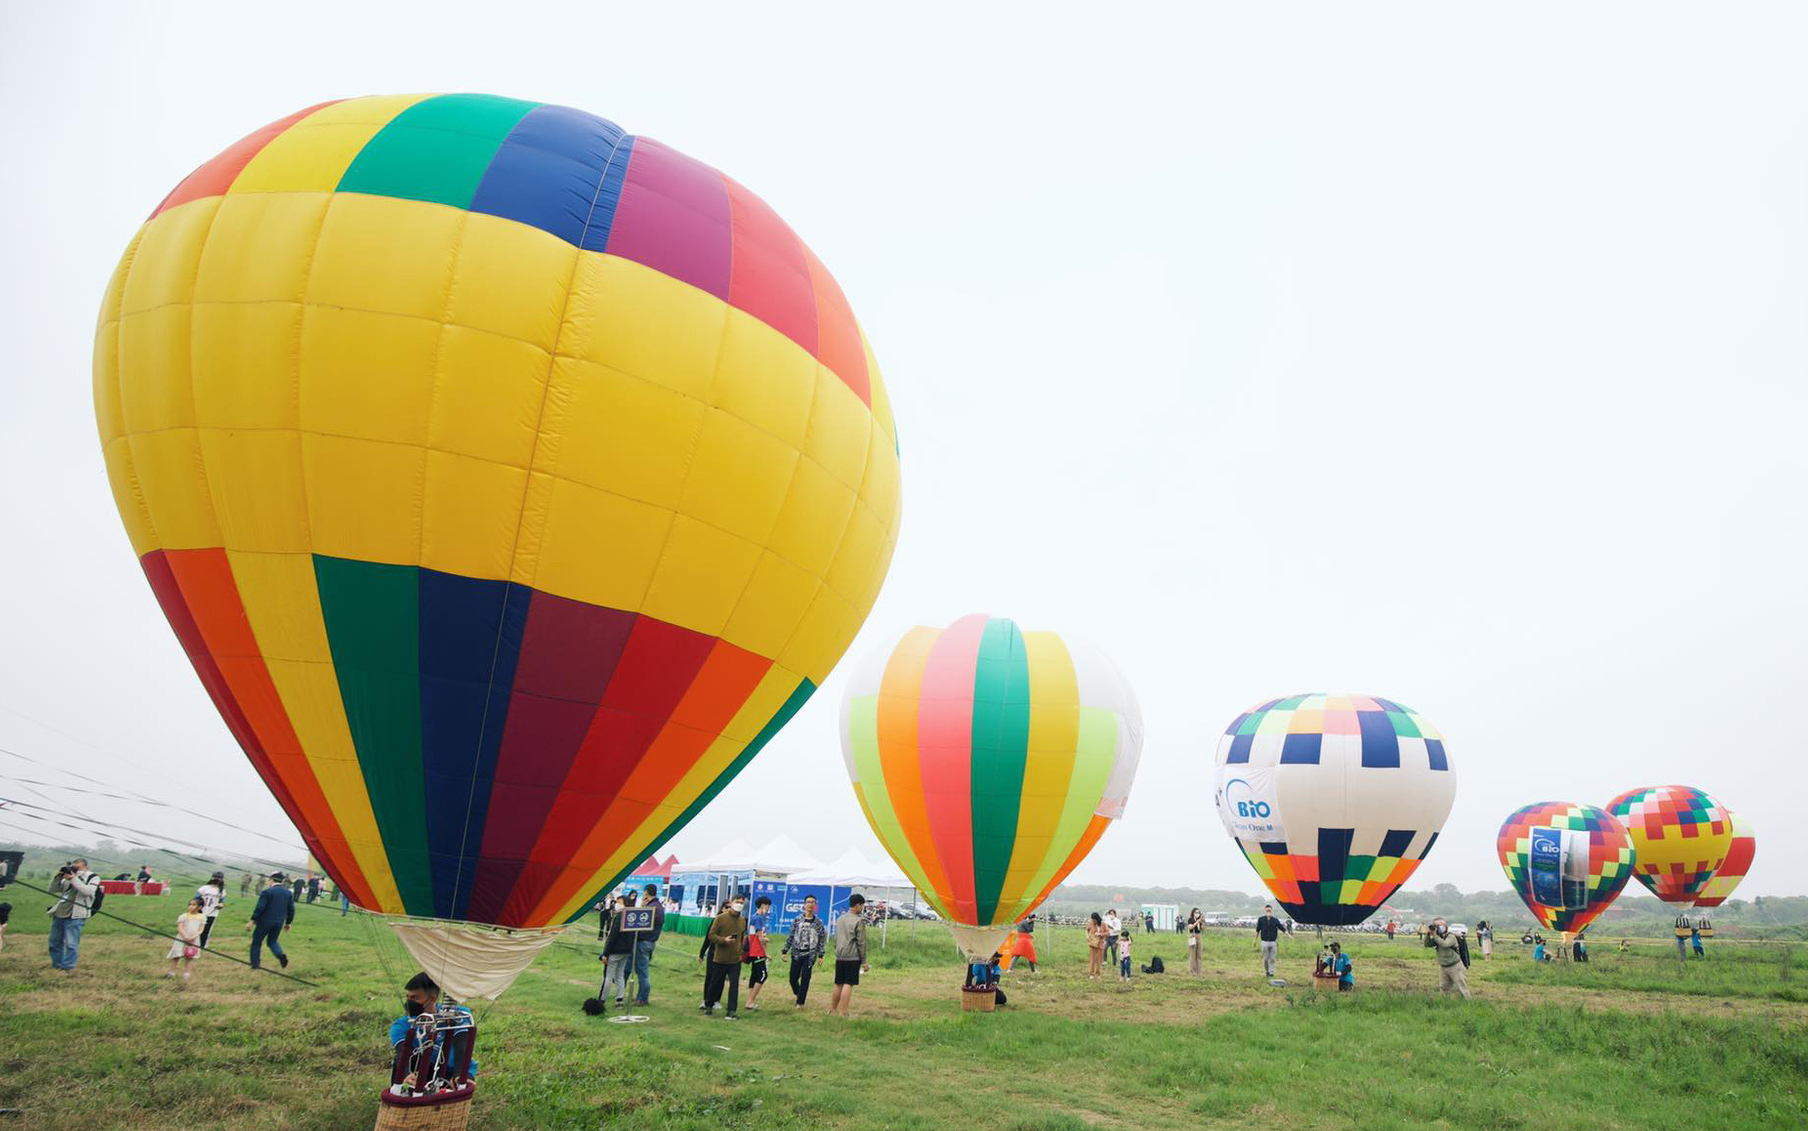 Lễ hội khinh khí cầu ở Hà Nội: Người dân háo hức chờ bay miễn phí - Ảnh 2.